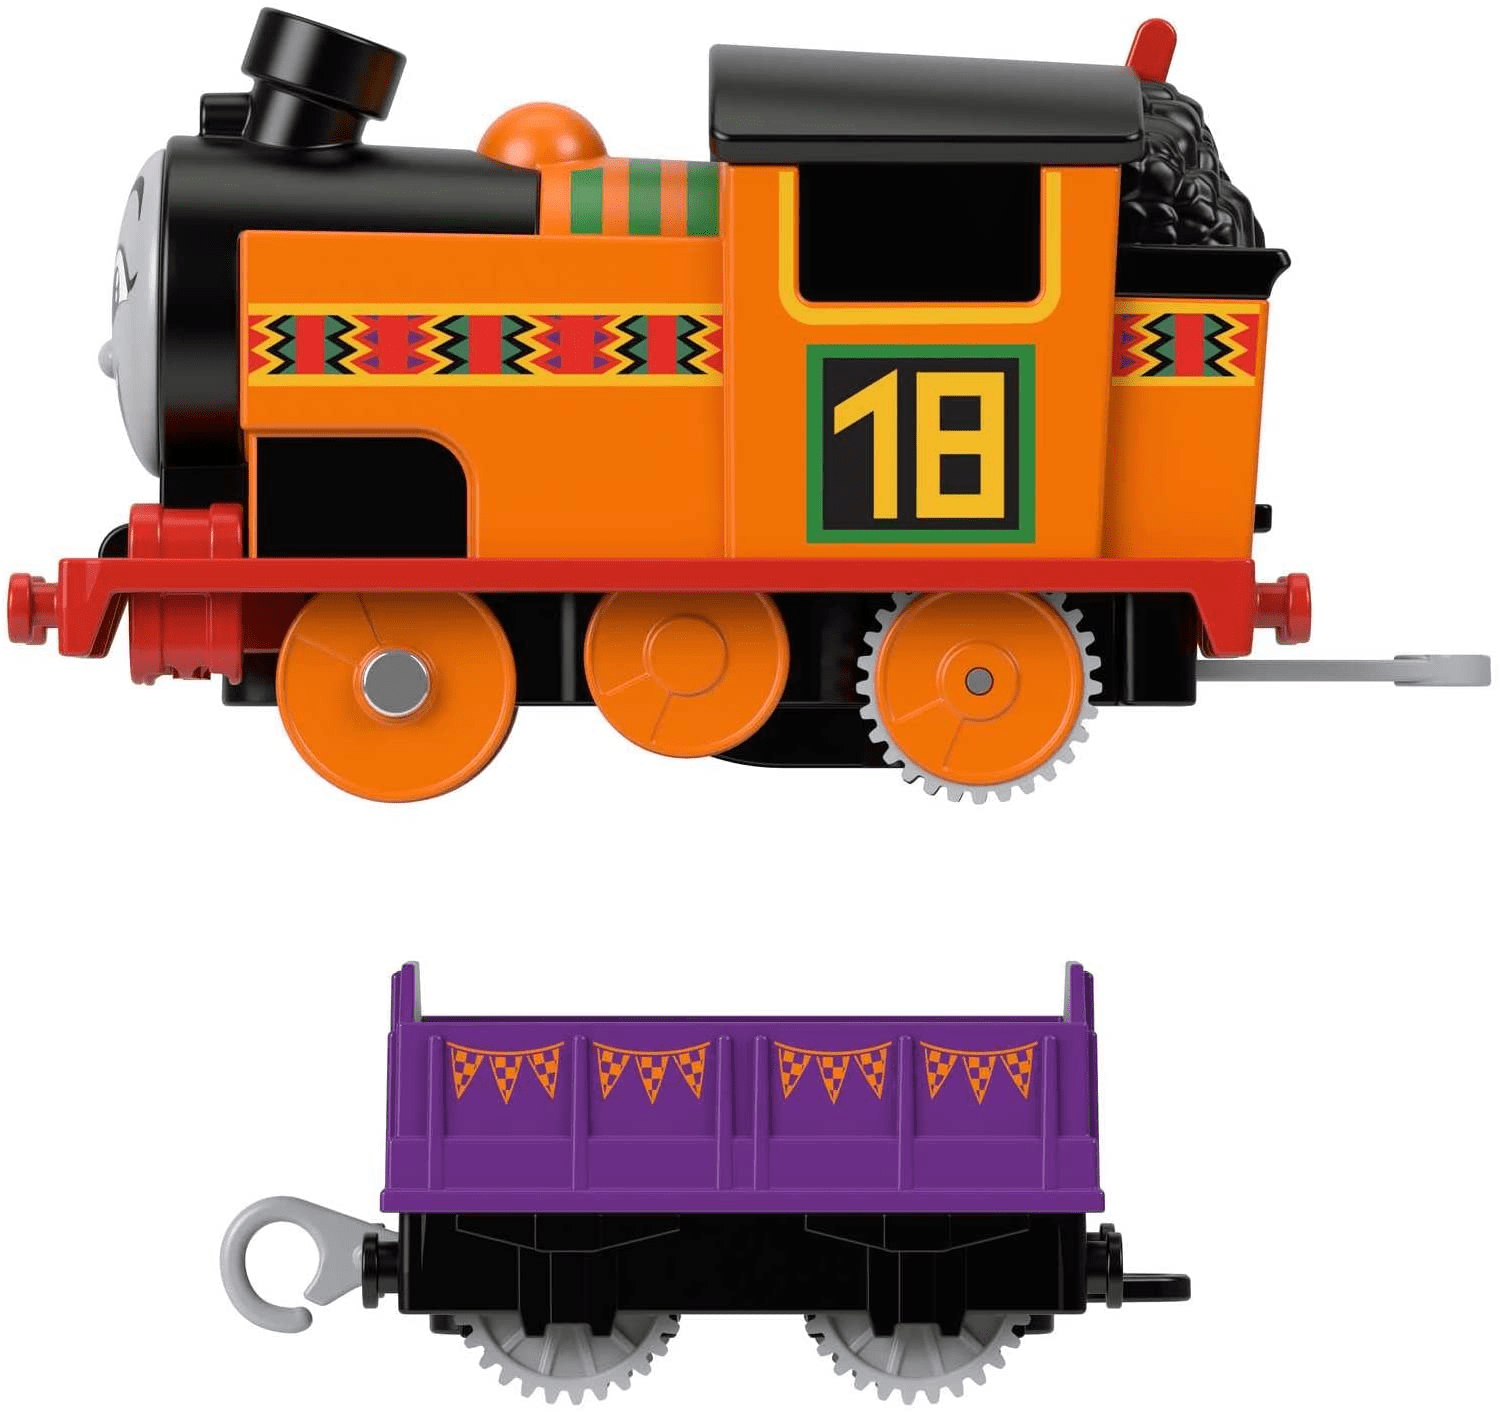 Trenzinho Motorizado Nia Thomas e Seus Amigos Fisher-Price Mattel - Fátima  Criança